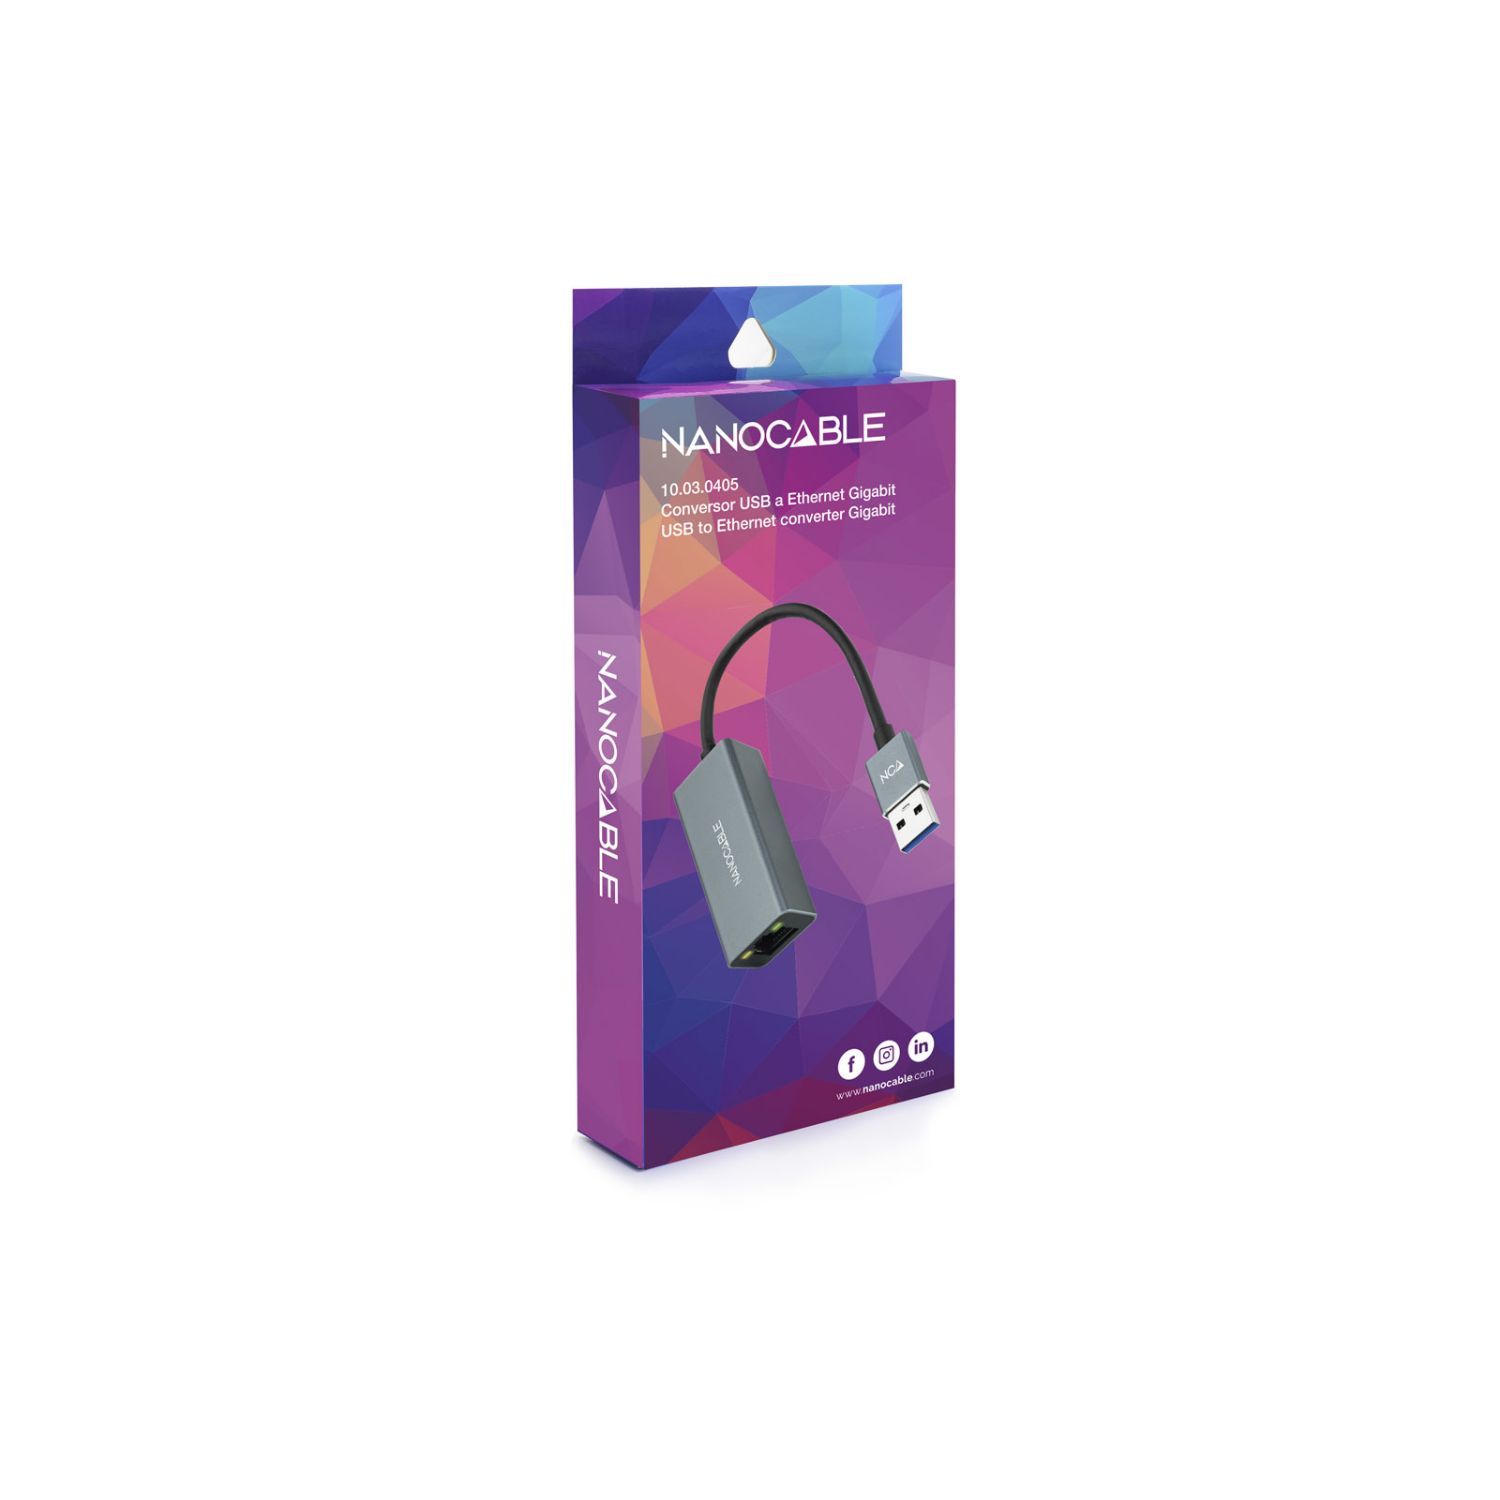 10.03.0405 - Adaptador Nanocable USB 3.0 a RJ45 15cm Gris (10.03.0405)